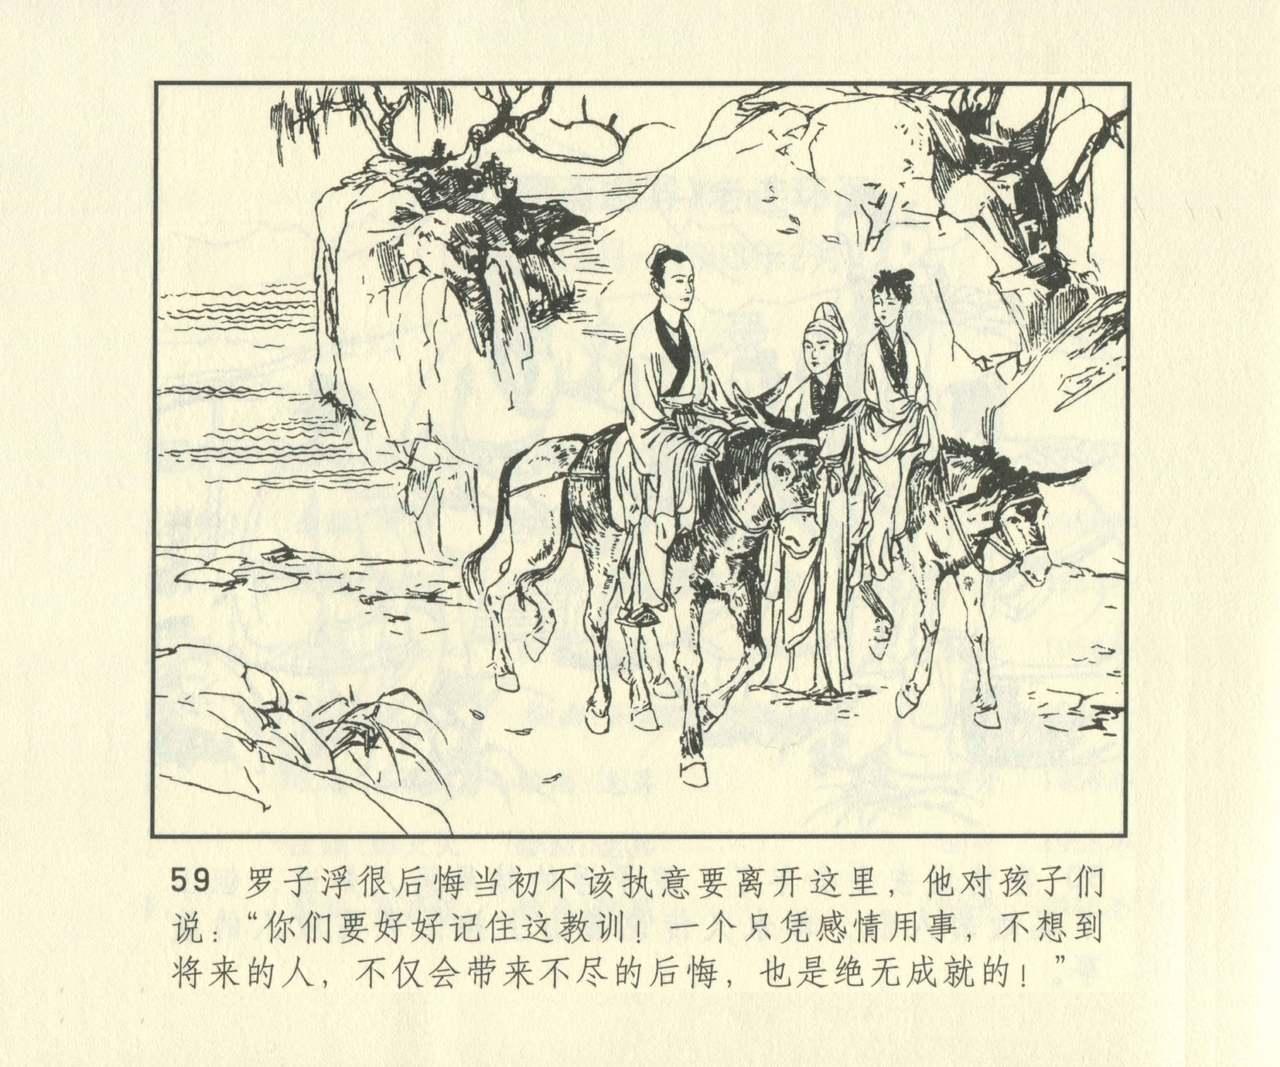 聊斋志异 张玮等绘 天津人民美术出版社 卷二十一 ~ 三十 675